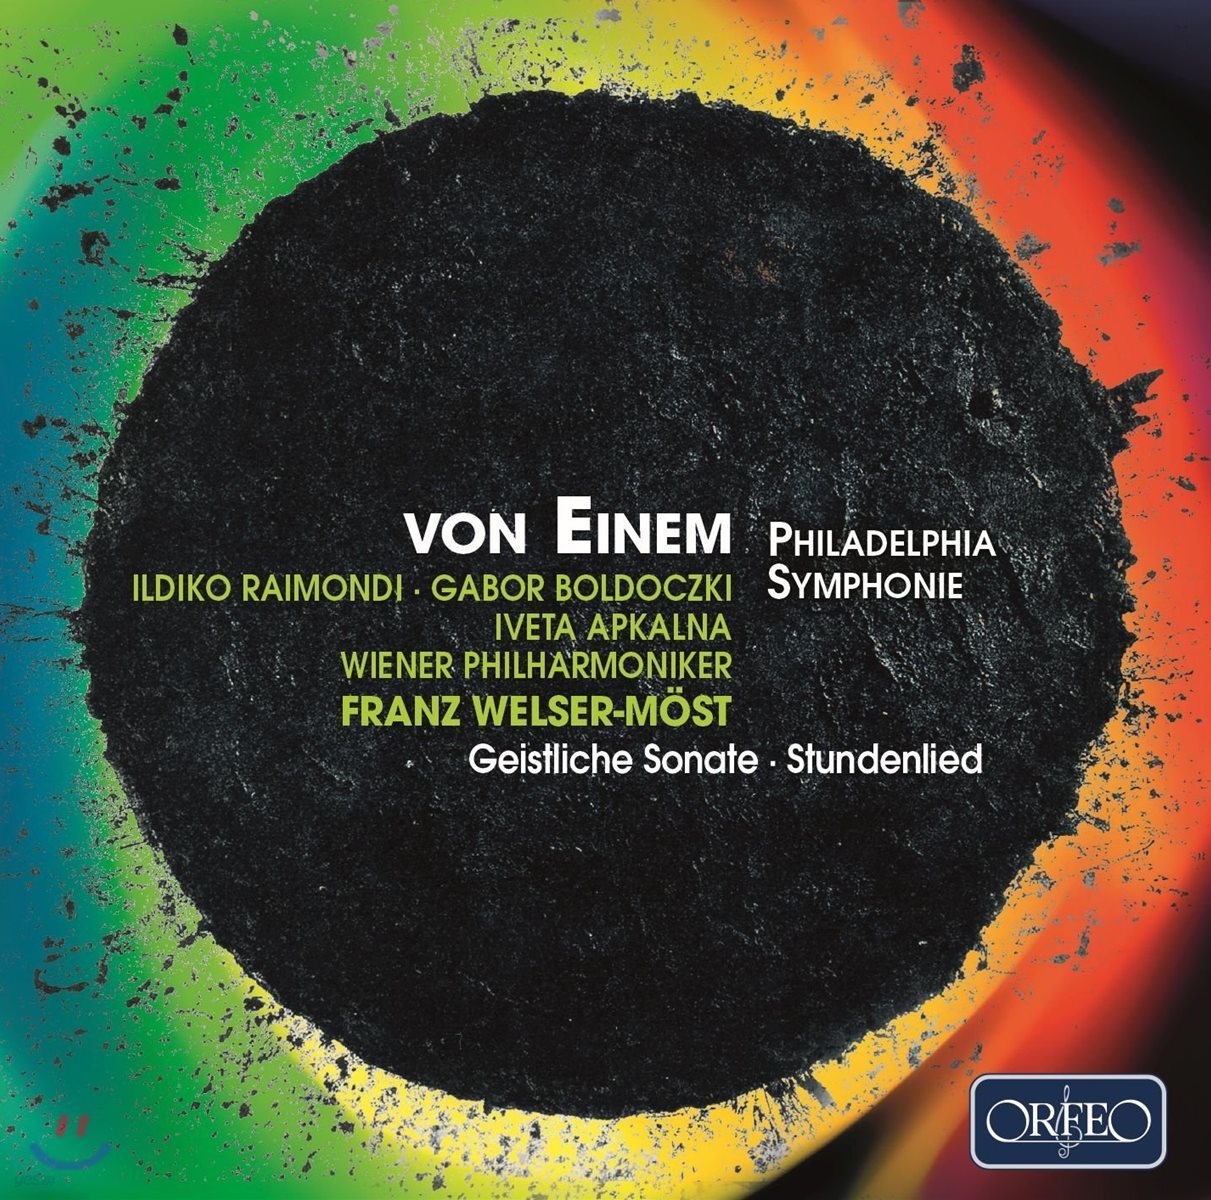 Franz Welser-Most 폰 아이넴: 필라델피아 교향곡, 시간의 노래, 성스러운 소나타 (von Einem: Philadelphia Symphony, Geistliche Sonate, Stundenlied)